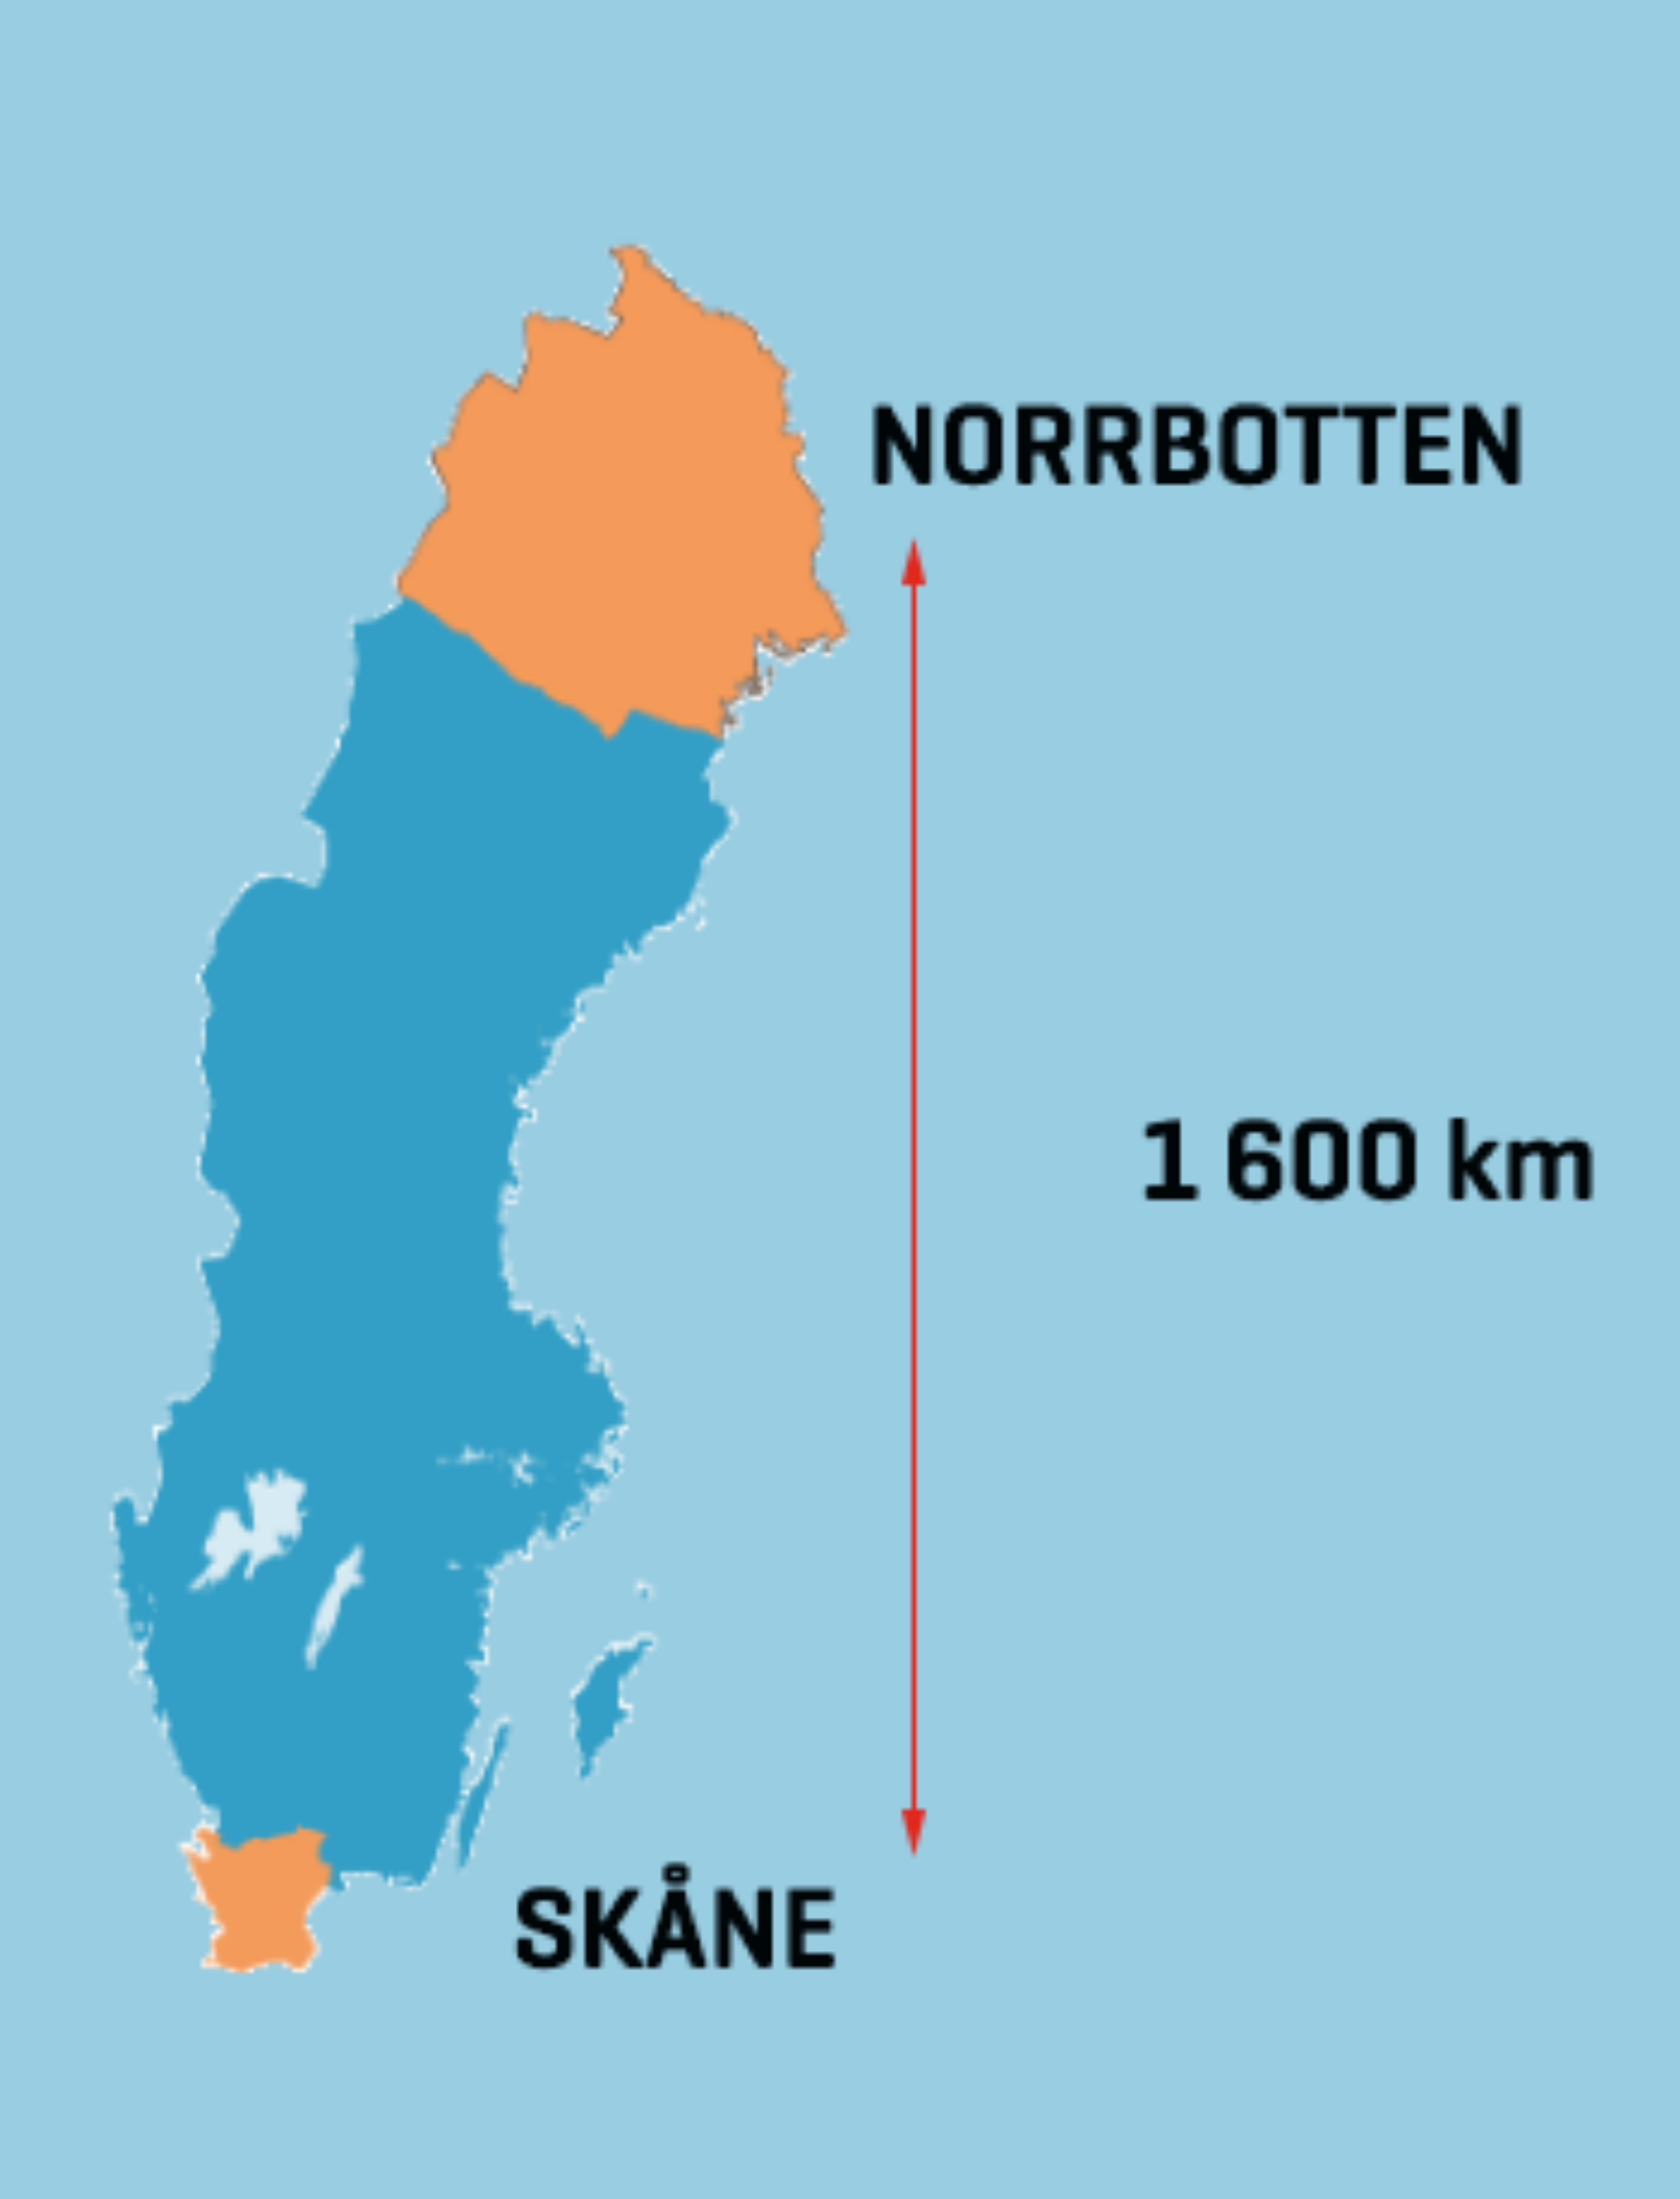 Karta över Sverige där Norrbotten och Skåne är utmärkta.